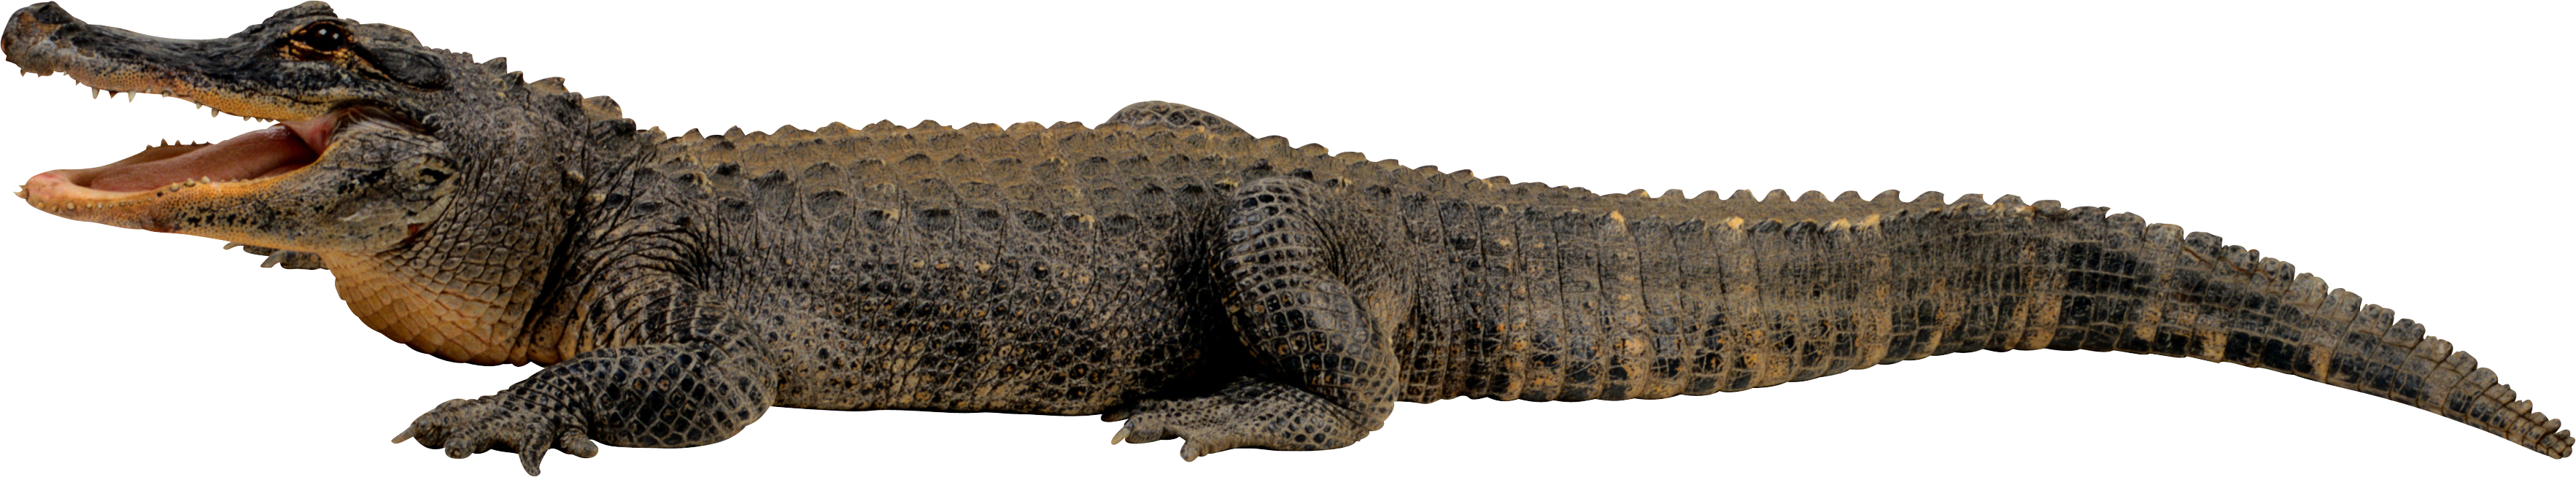 Crocodile HD PNG - 118145